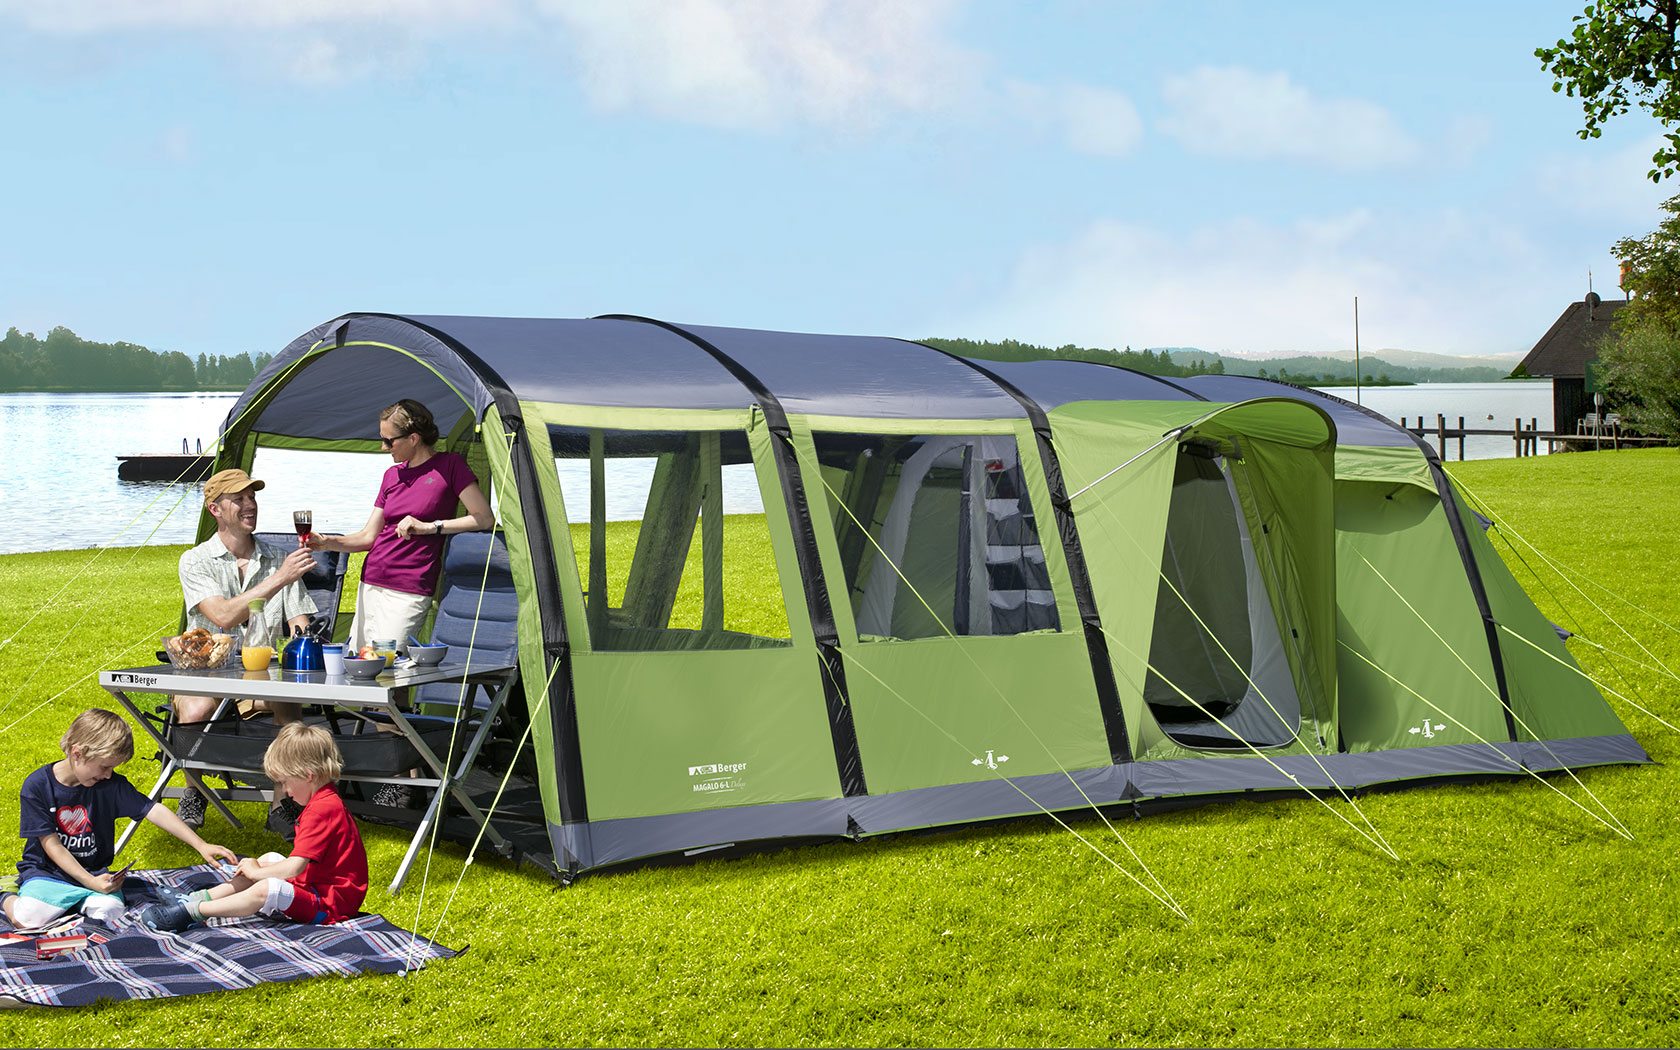 Camping platform. Лагерь модульный (шатер и 2 палатки) Nash Base Camp. Berger Family надувная палатка 6. Палатка Бергер 6 местная. Палатка кемпинговая Aztec asilo Plus 9.